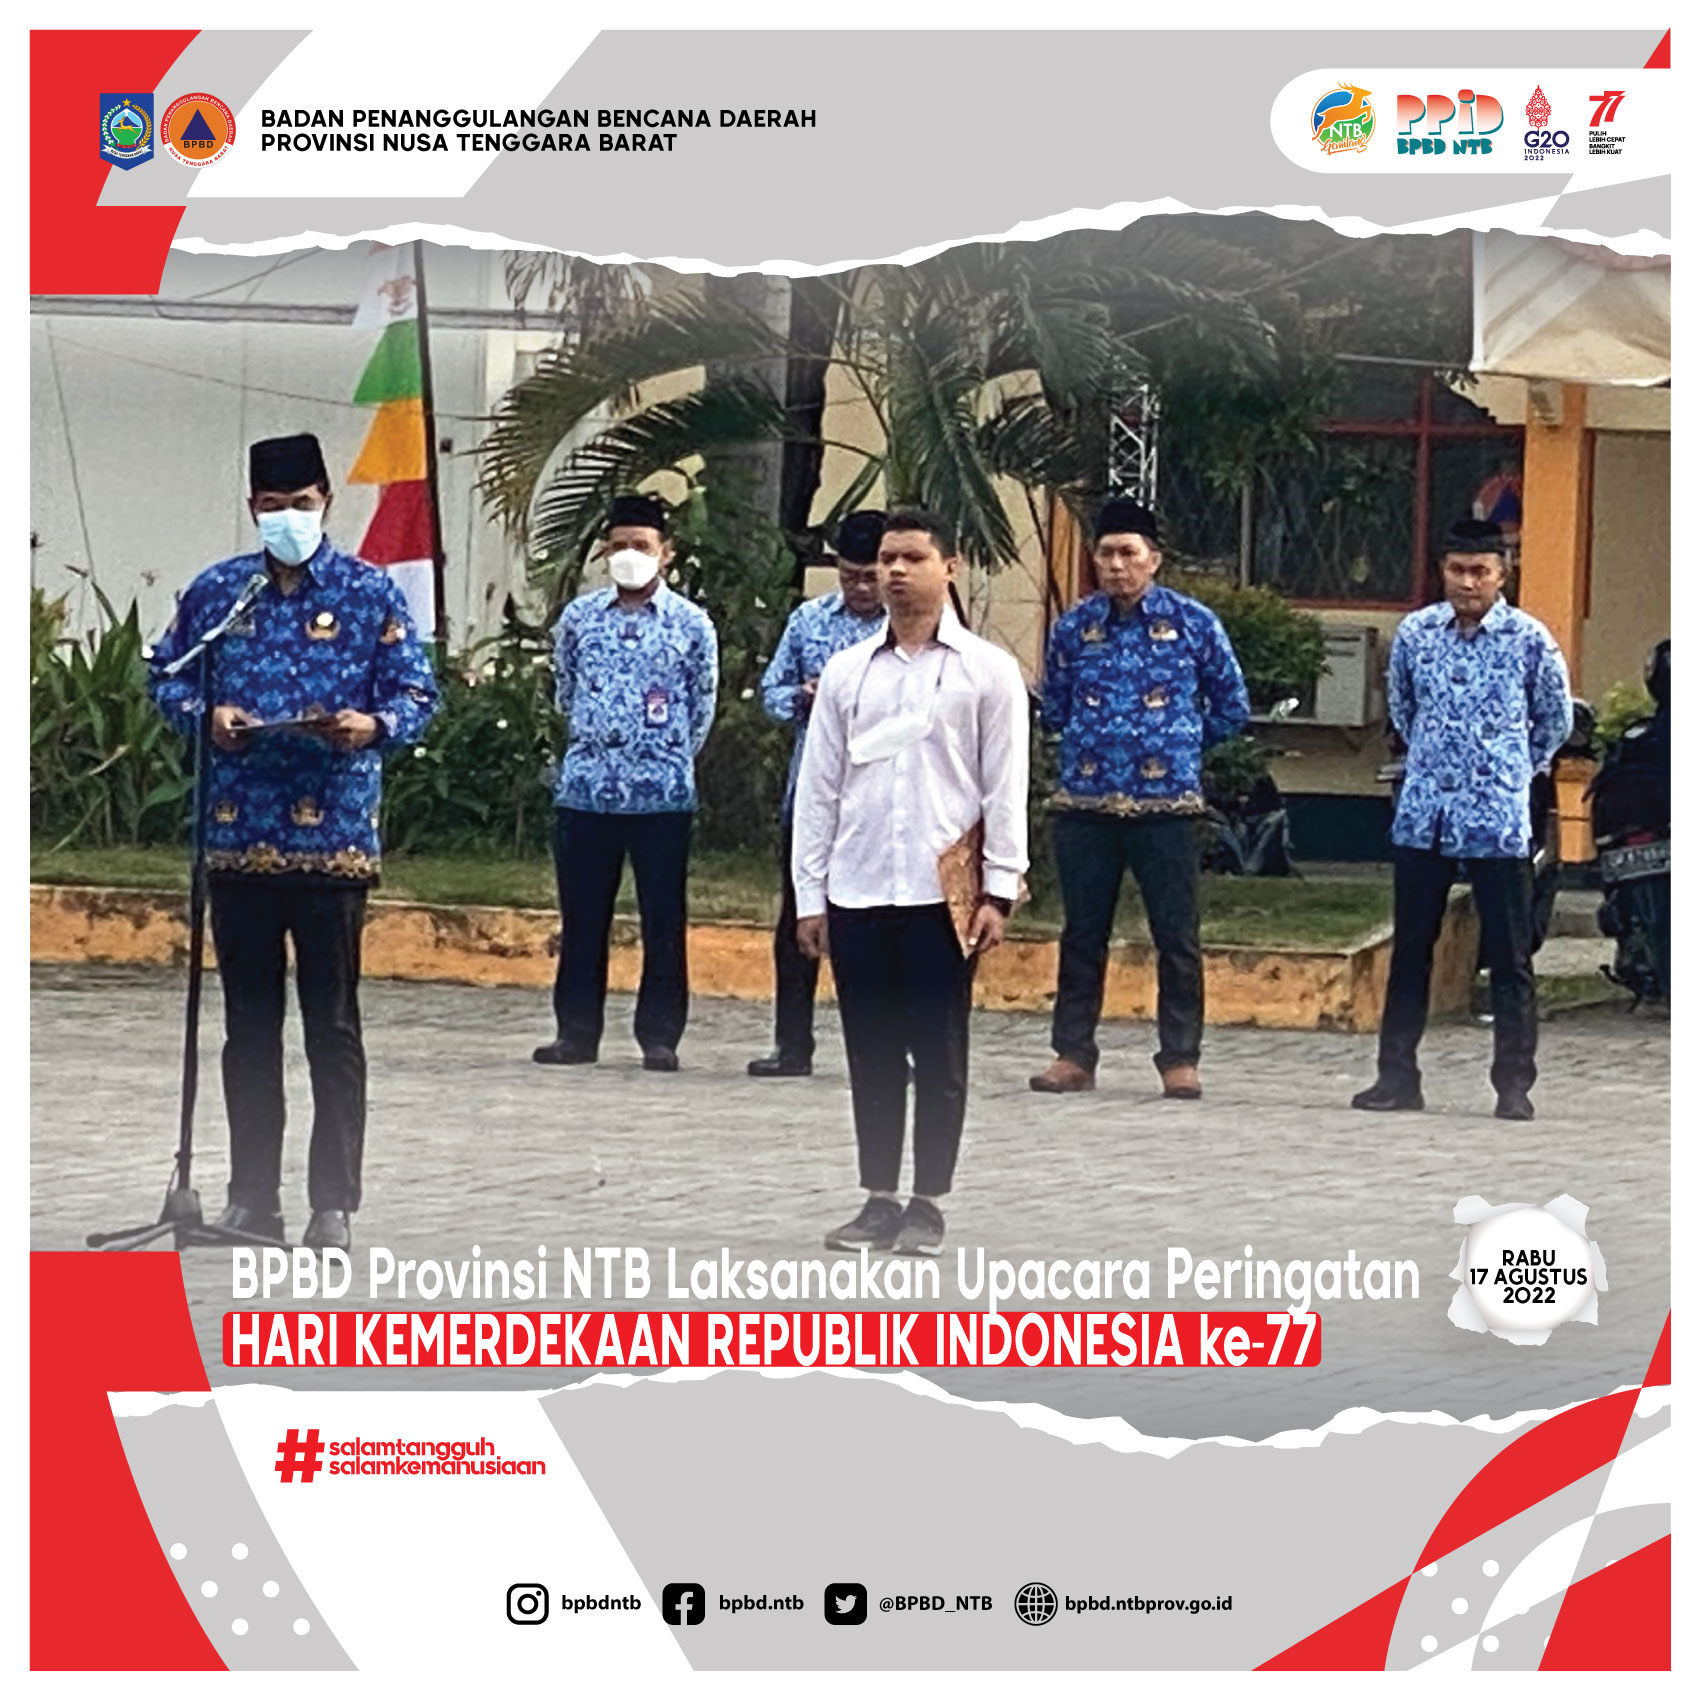 BPBD Provinsi NTB Laksanakan Upacara Peringatan Hari Kemerdekaan Republik Indonesia ke-77 (Rabu, 17 Agustus 2022)